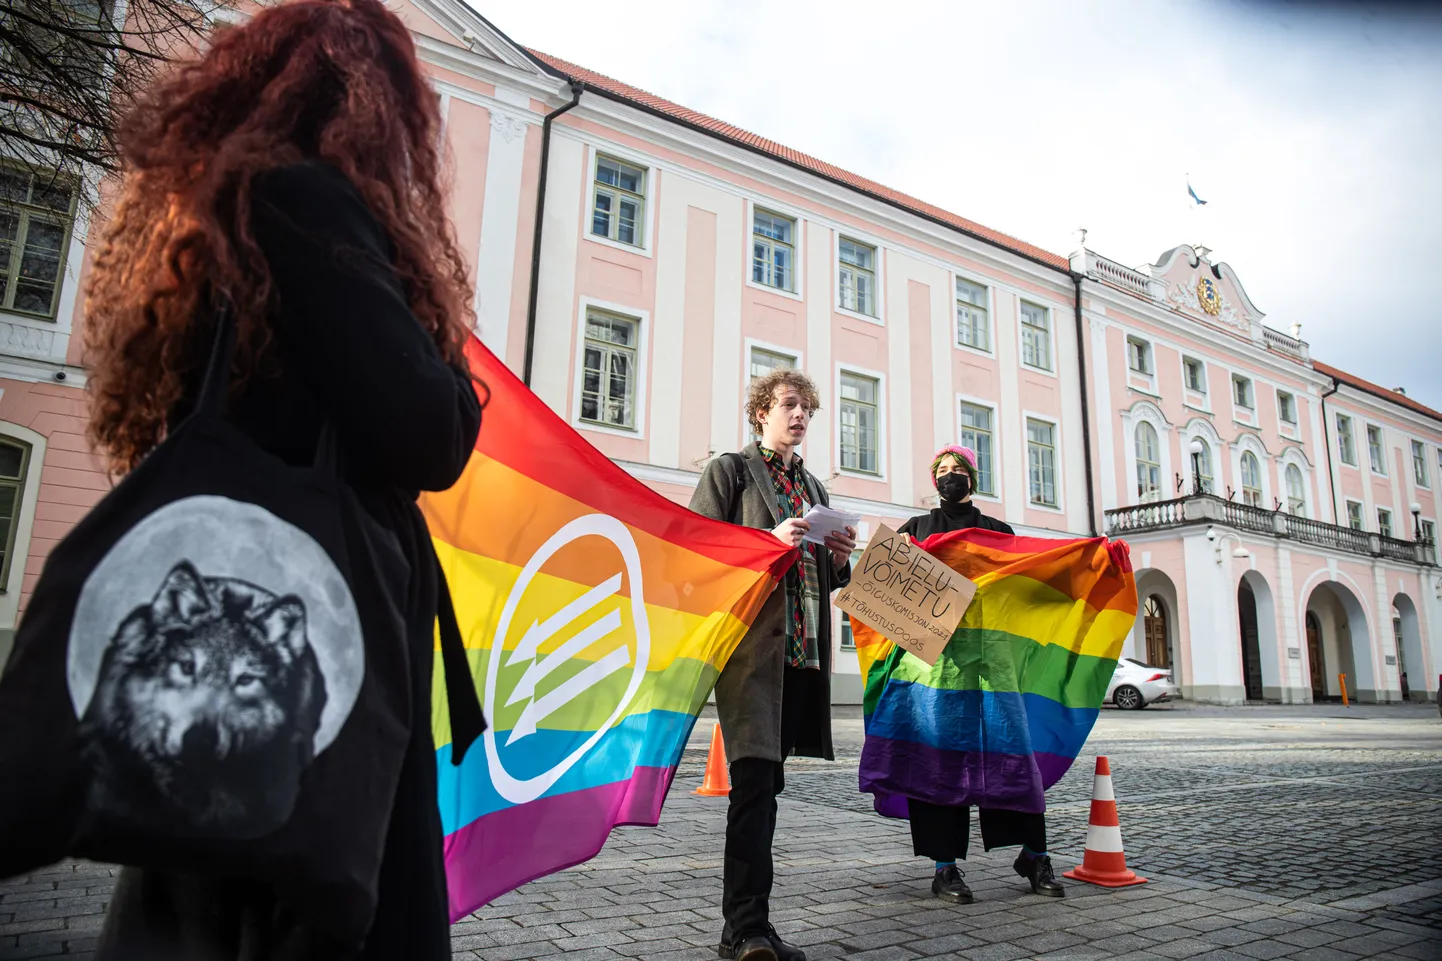 23.02.2021, Tallinn. LGBT meeleavaldus "Abieluvõrdsuse tõhutustoos". Jens Jaanimägi, Laila Kaasik. Foto Remo Tõnismäe, Postimees